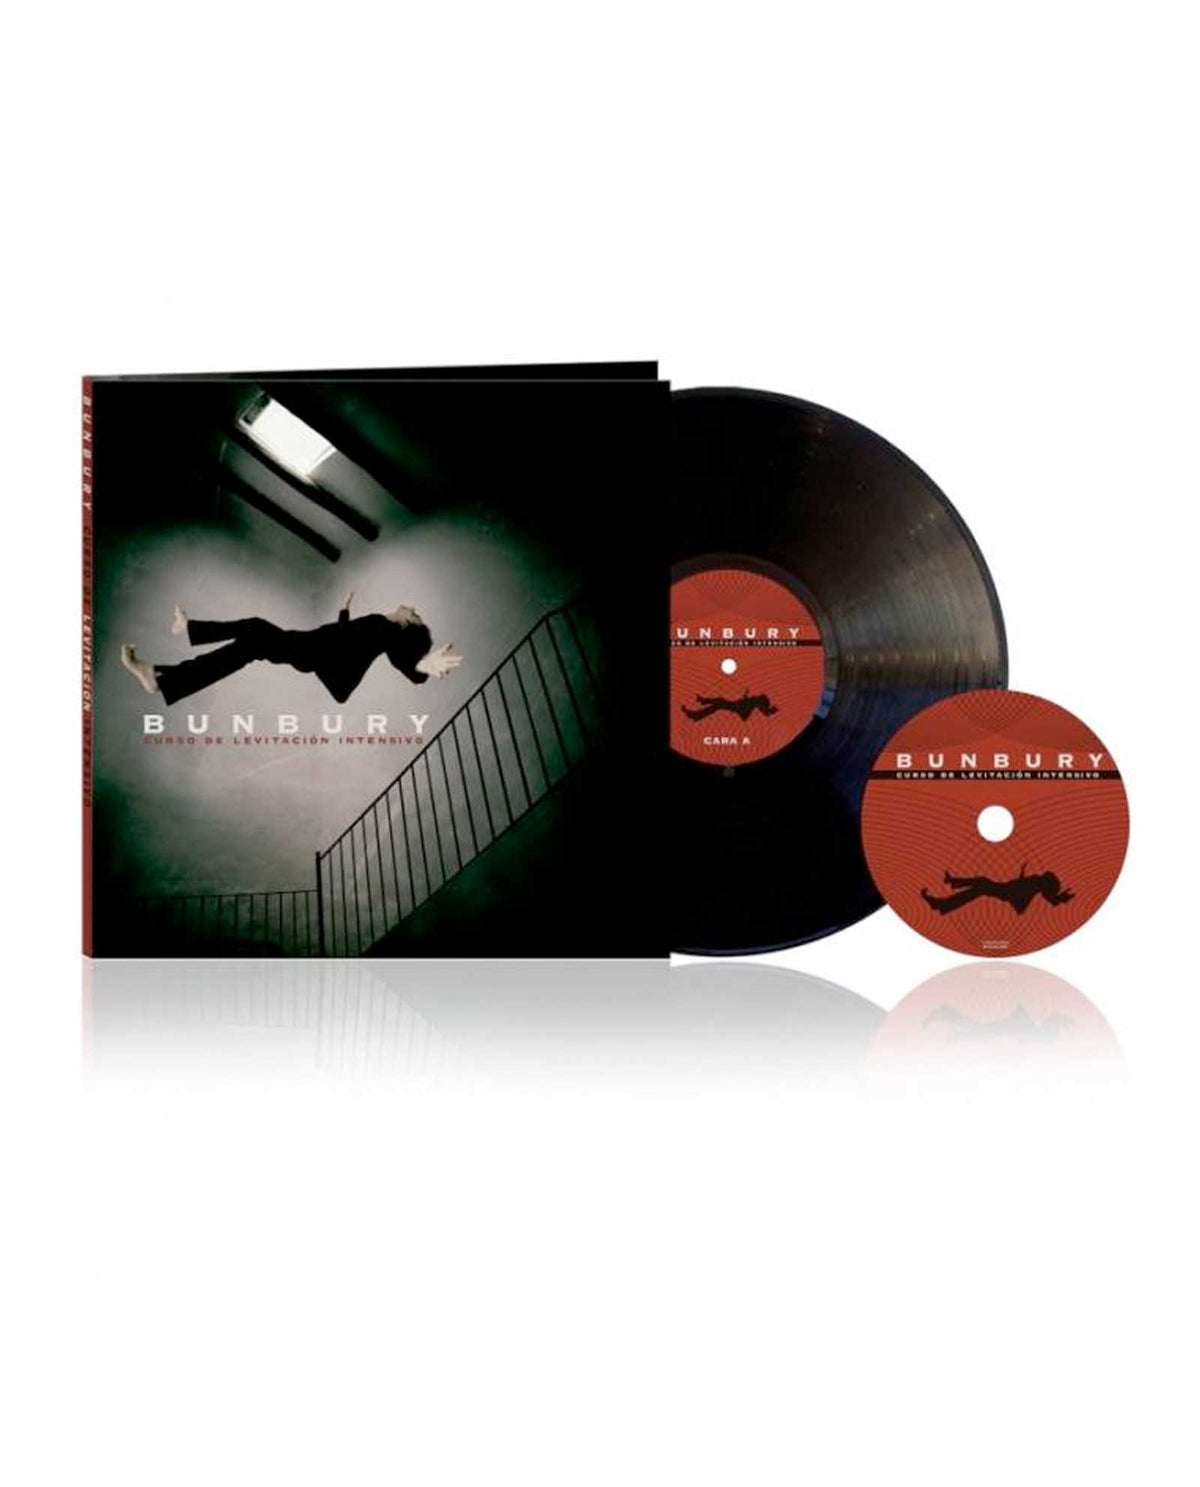 Bunbury - LP+CD "Curso de Levitación Intensivo" - Rocktud - Rocktud